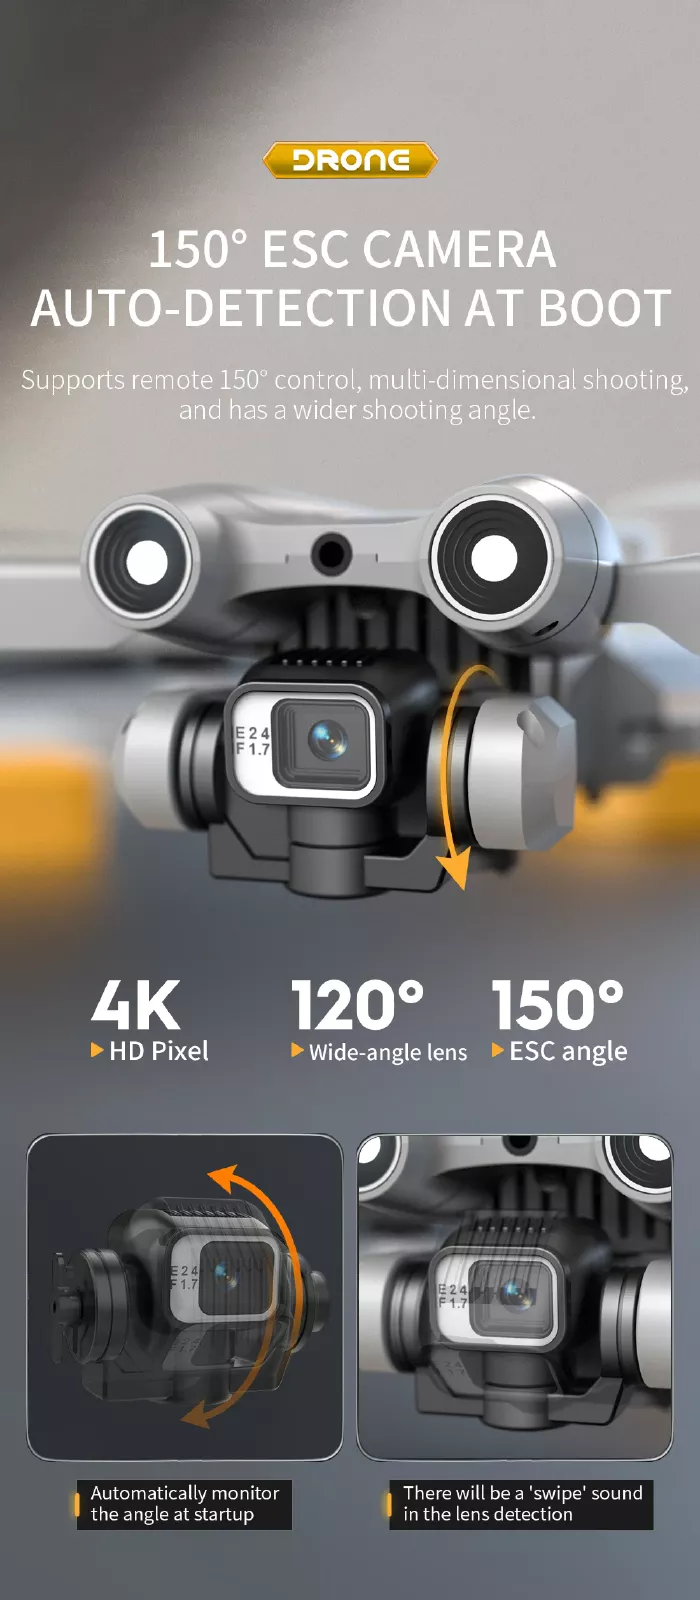 دوربین کوادکوپتر kf610 قابلیت چرخش دارد و دارای زاویه دید واید 120 درجه است